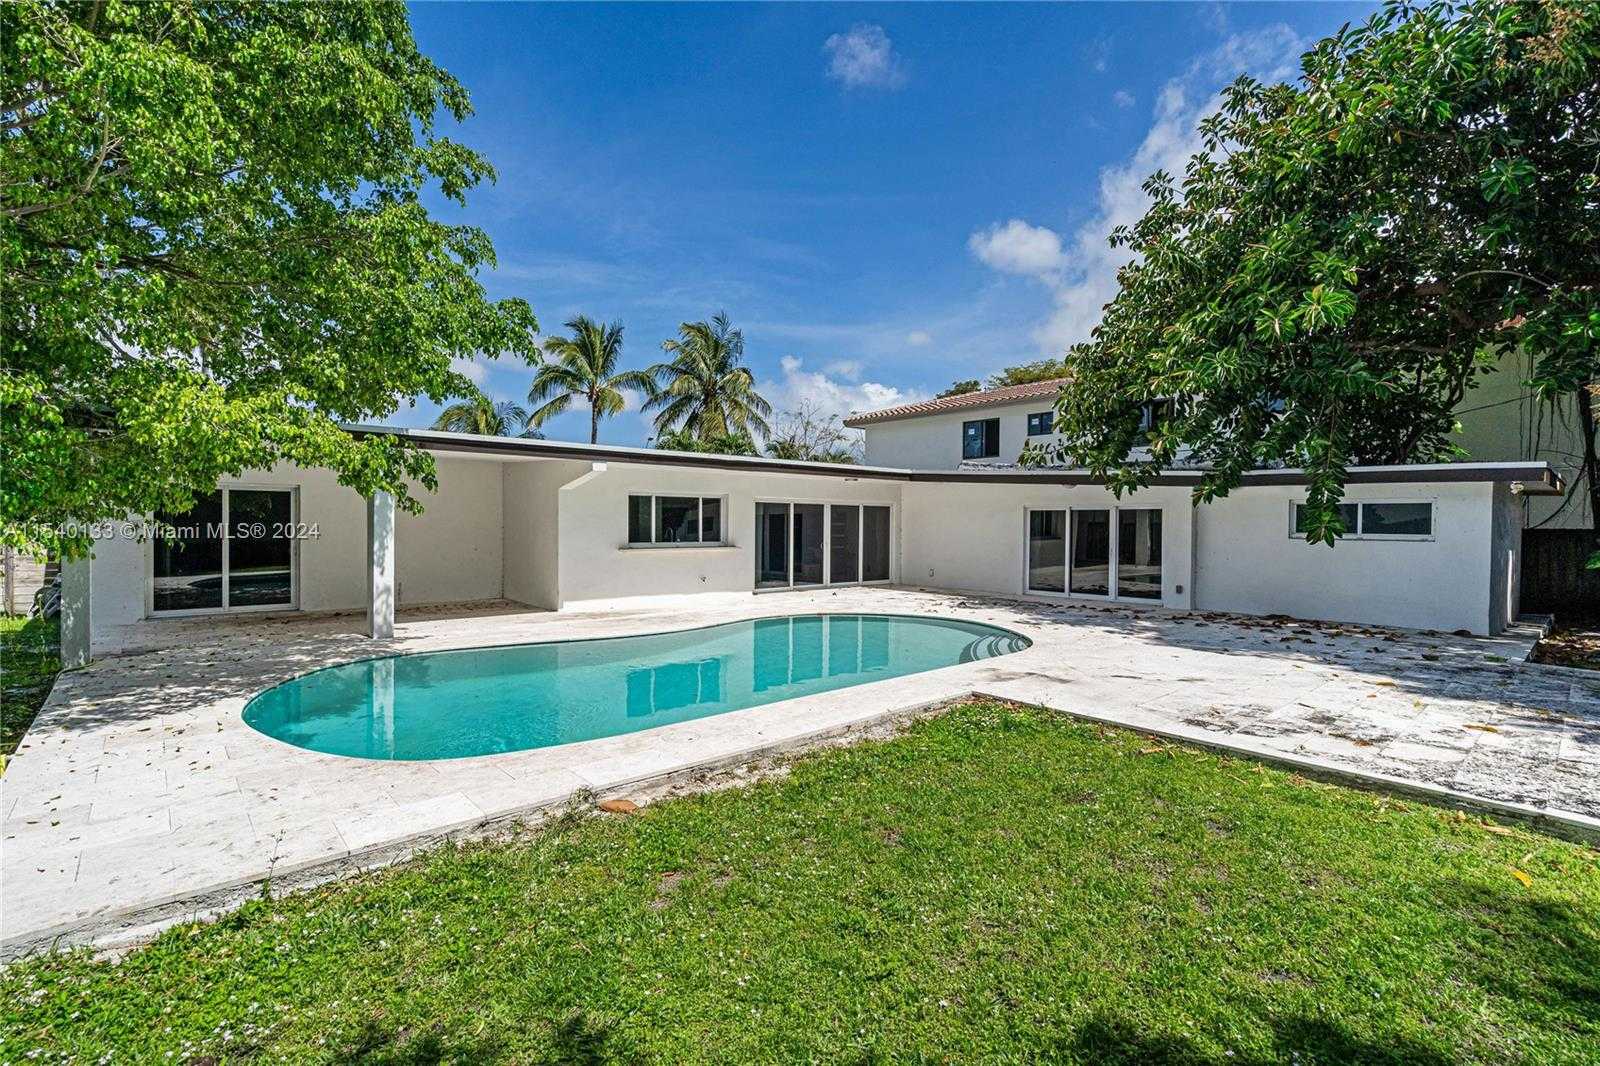 House Miami  -  ref MIA392445986 (picture 1)